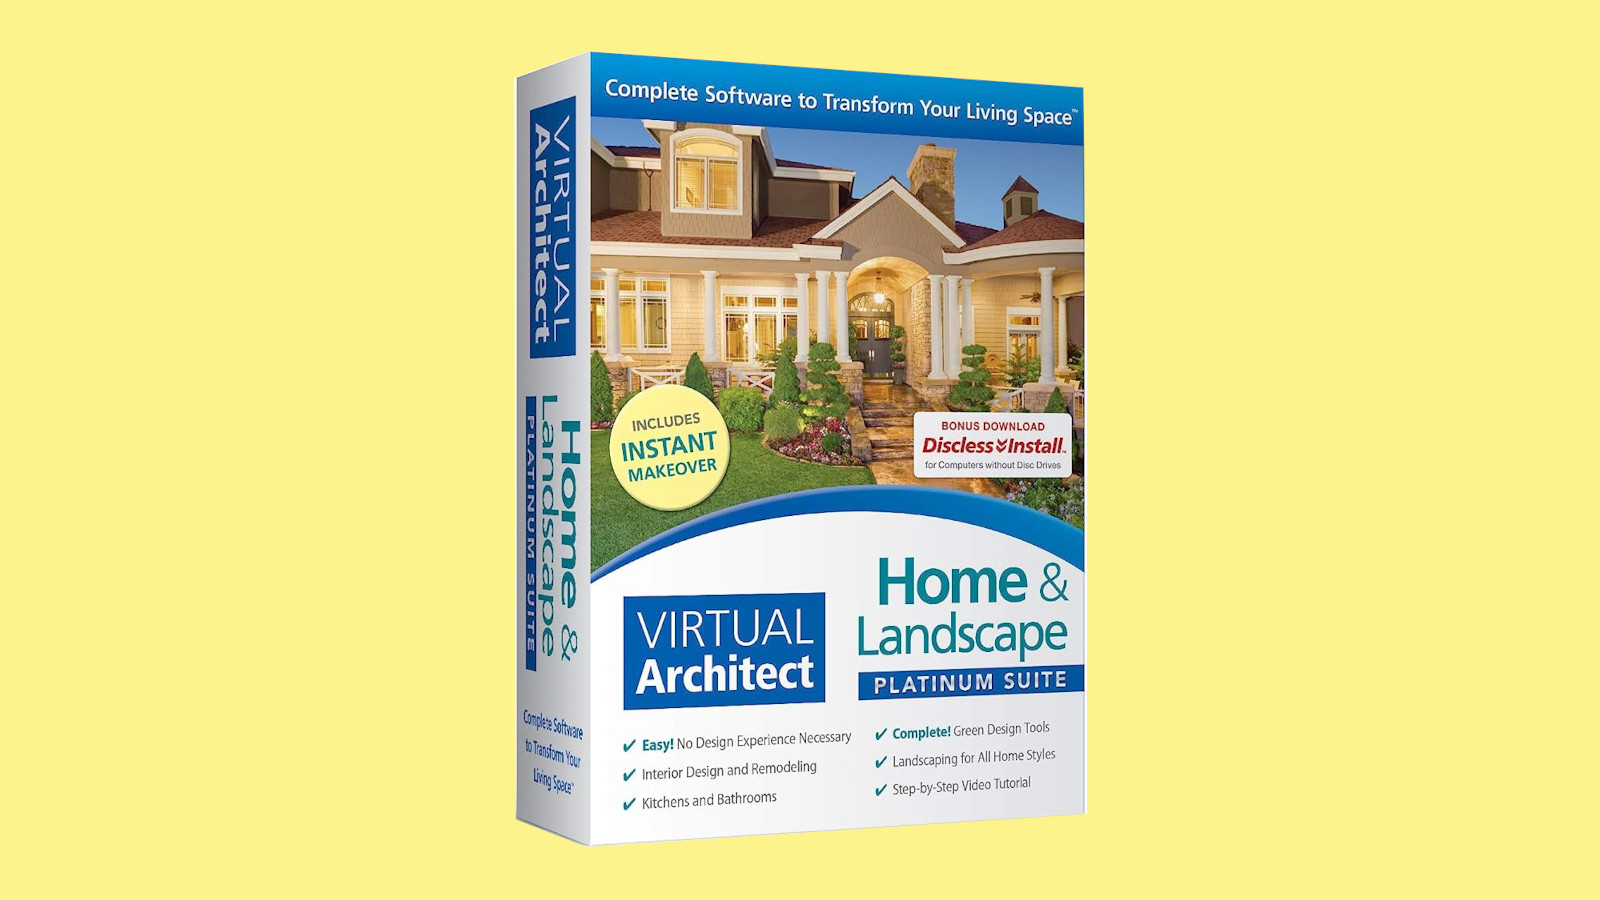 Virtual Architect Home & Landscape Platinum Suite CD Key $103.45